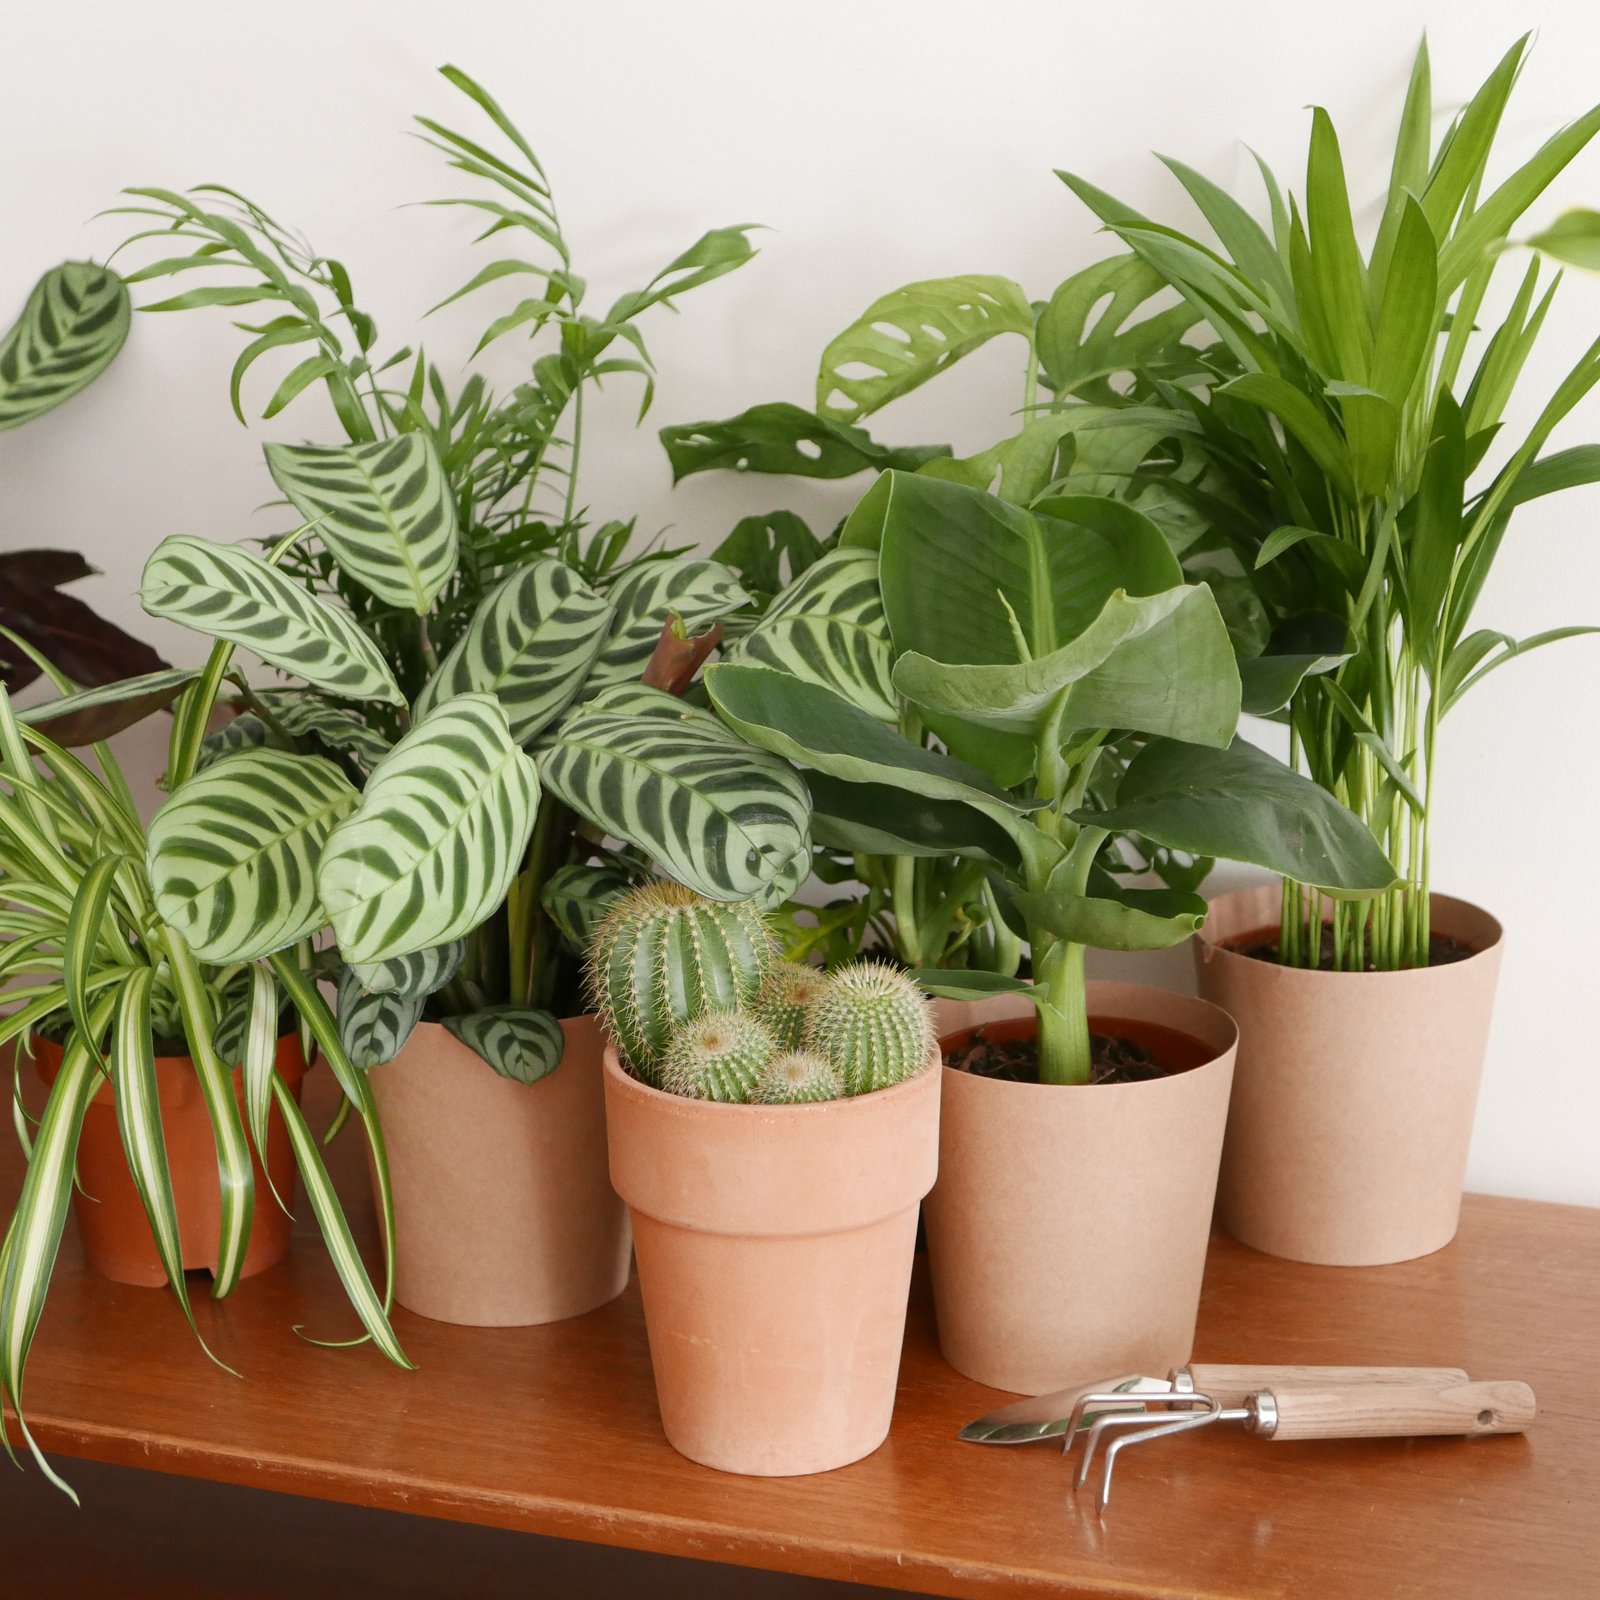 Comment entretenir vos plantes d'intérieur ?